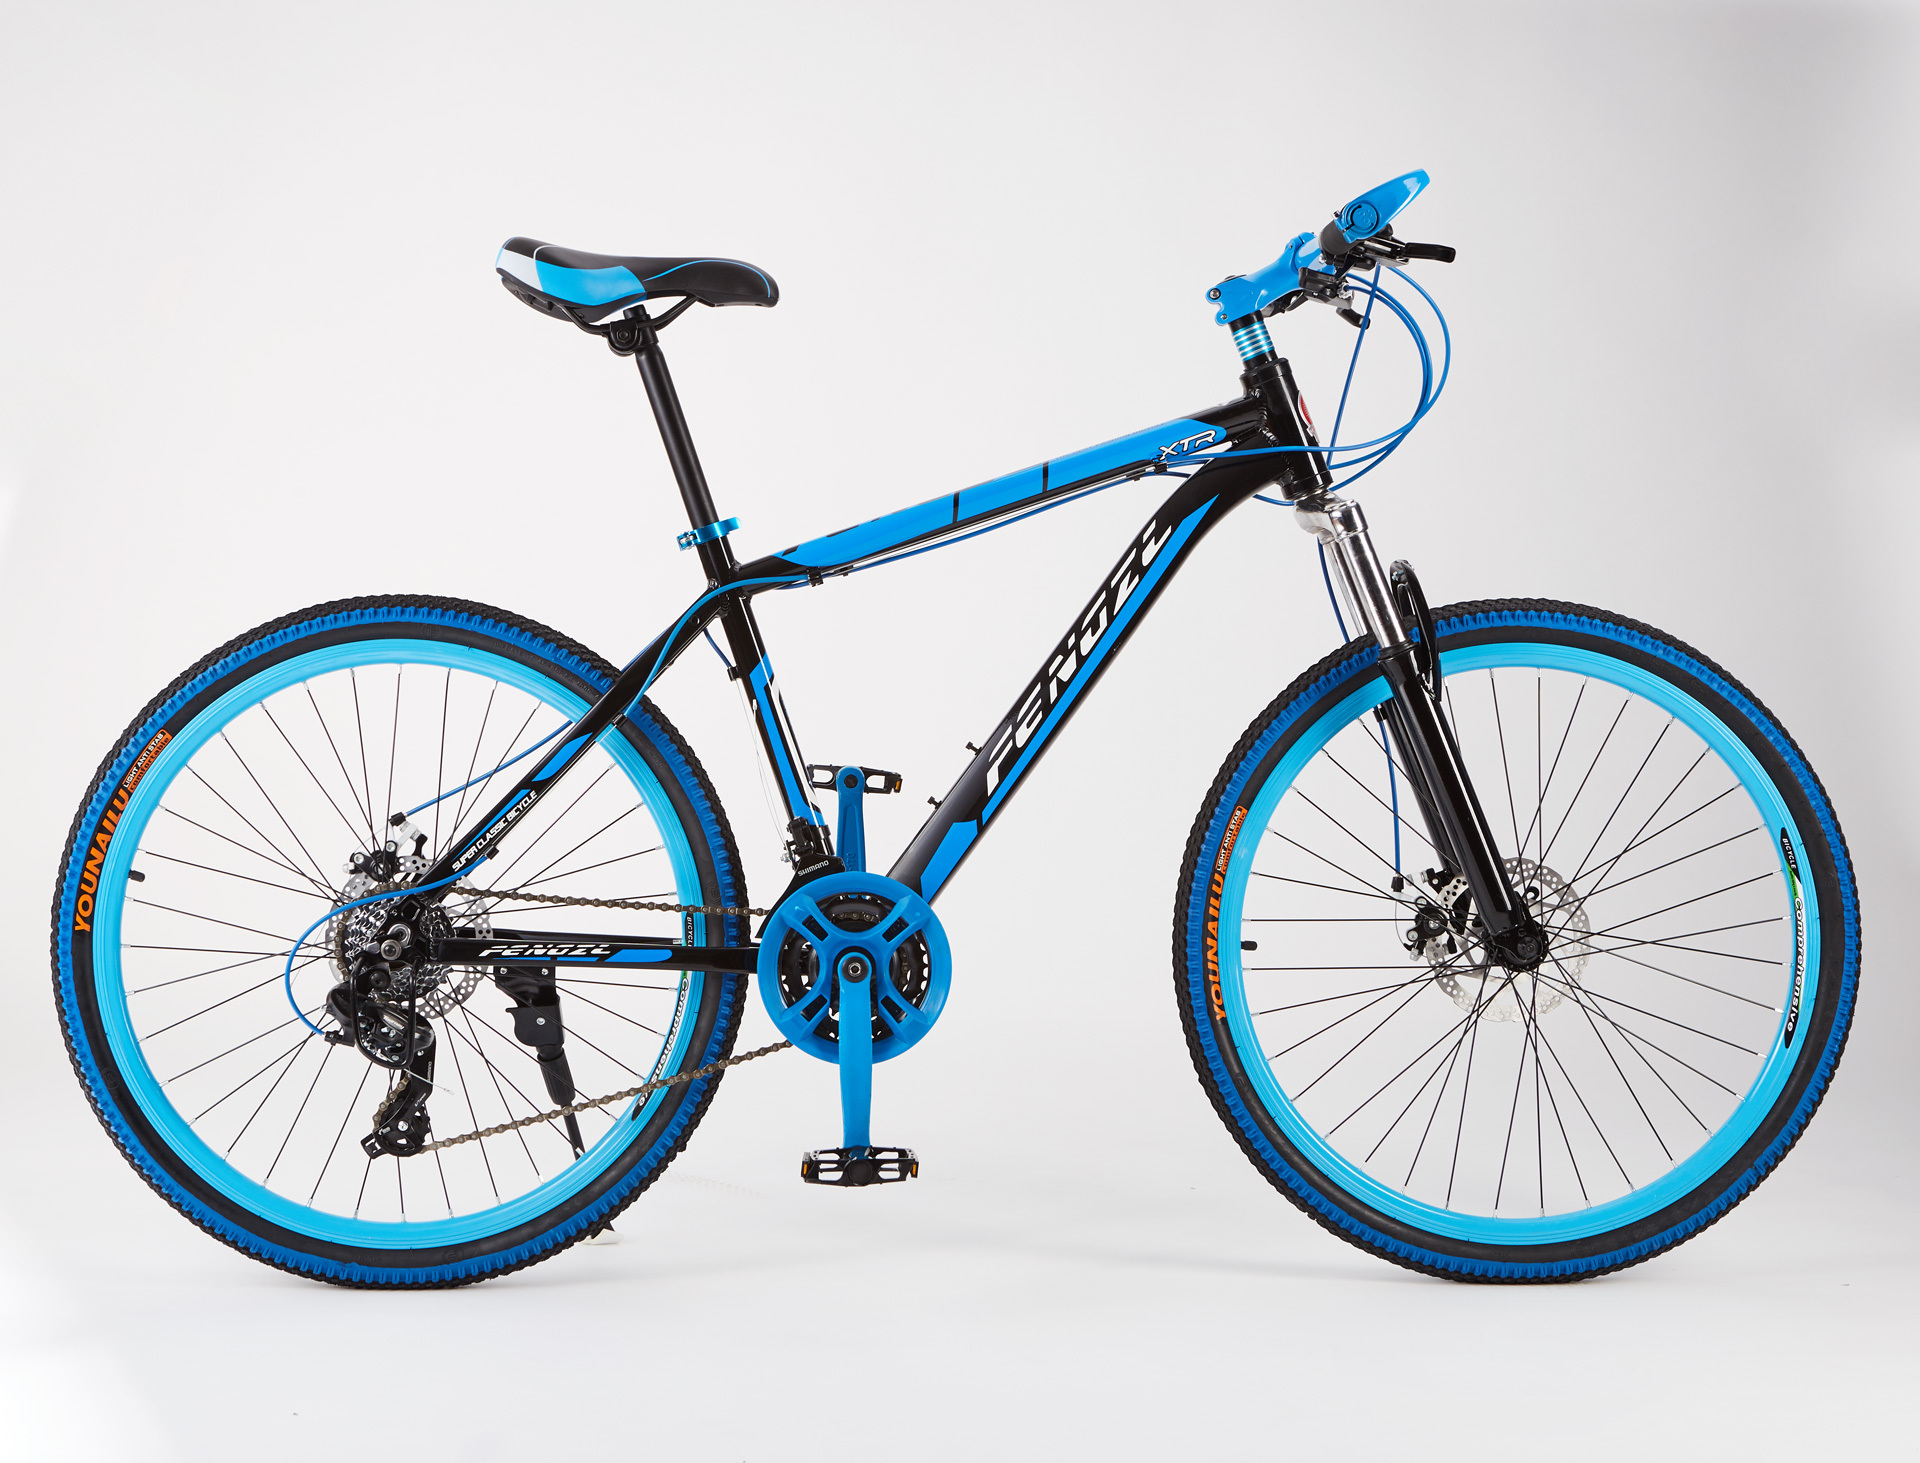 TREK崔克 — 一个对自行车发自内心的热爱的美国顶级自行车品牌 - 普象网